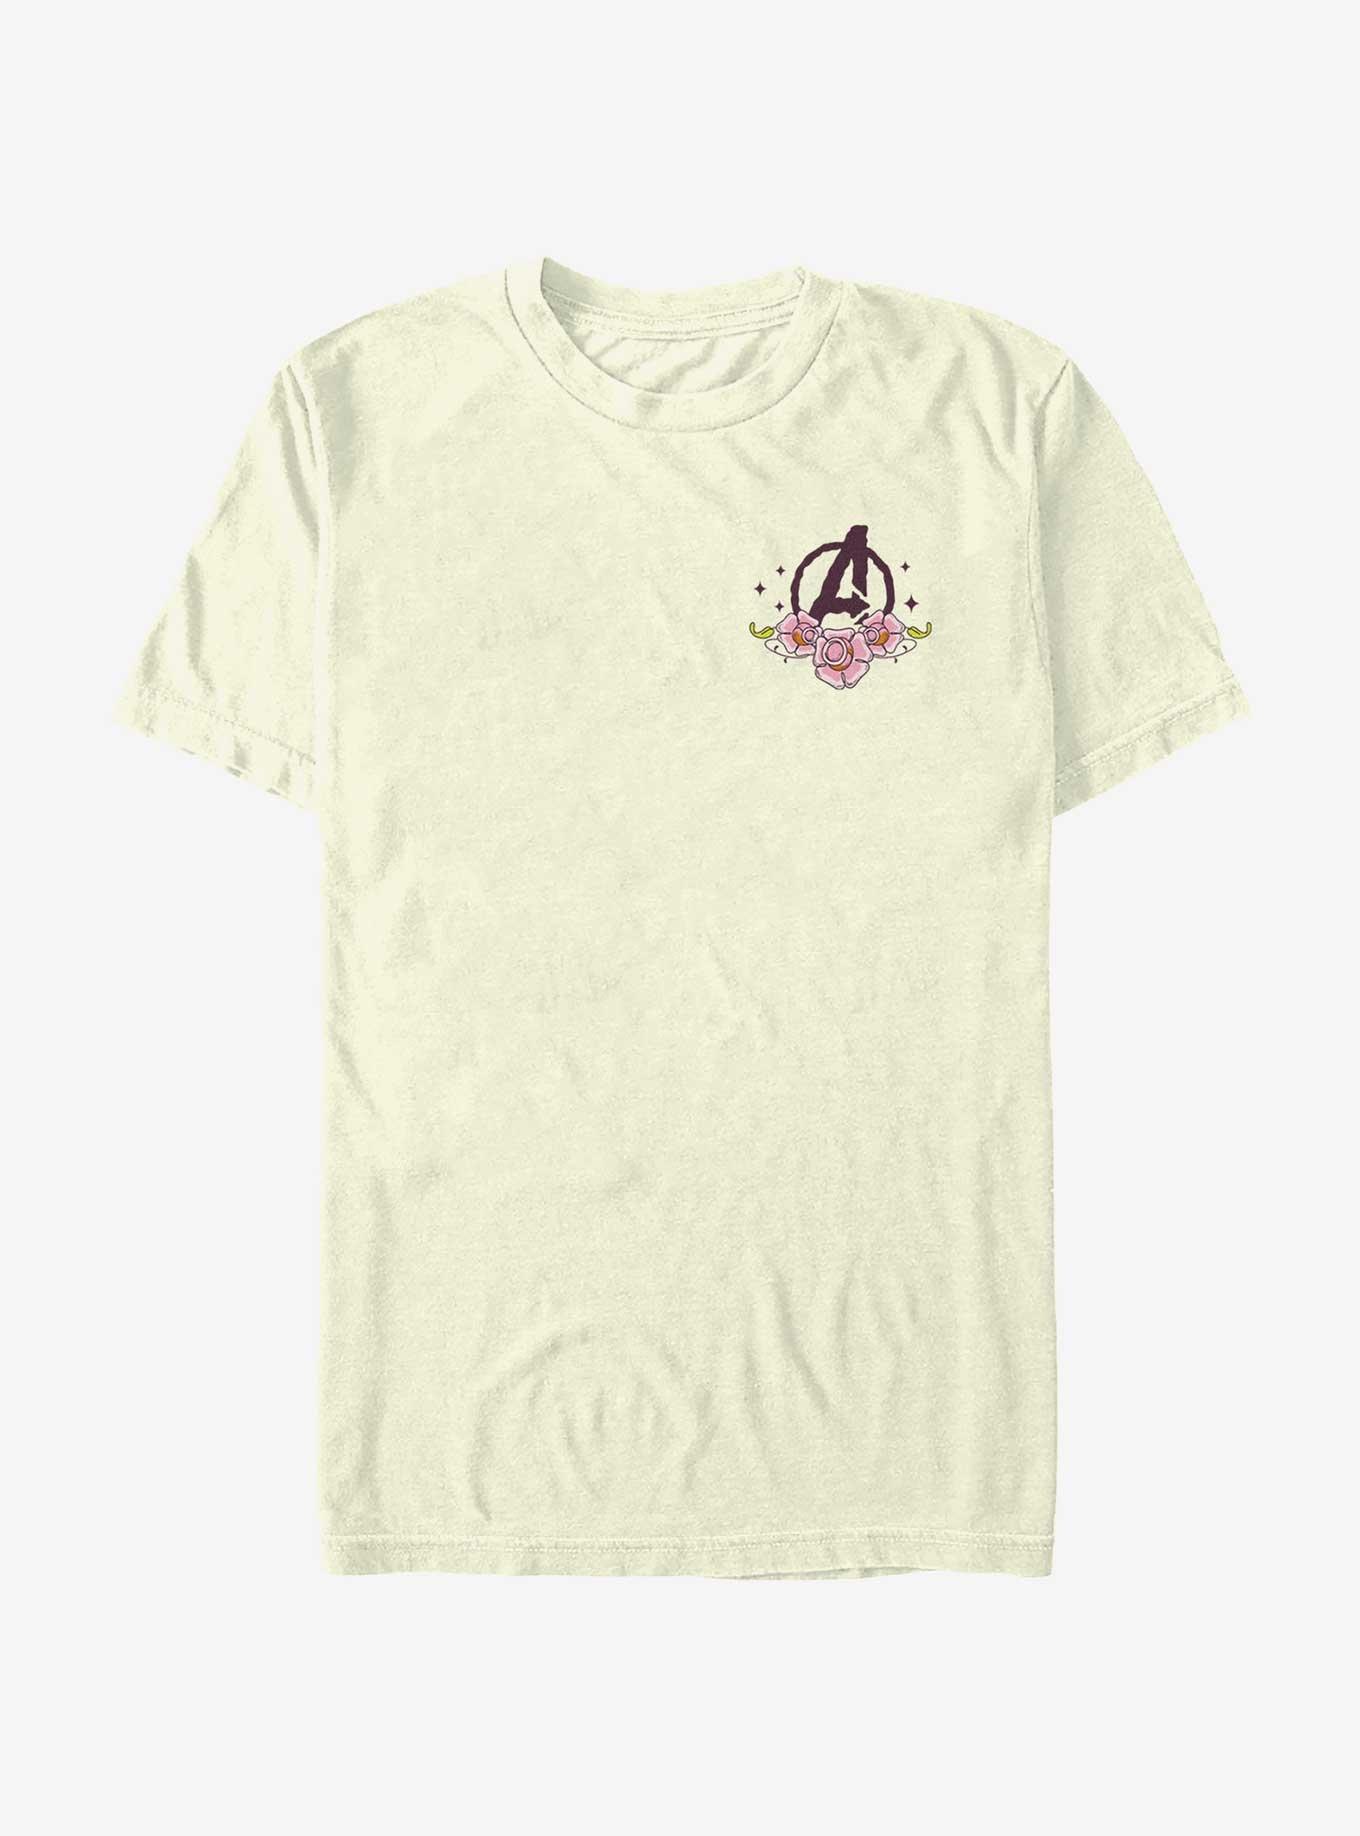 Marvel Avengers Logo Tattoo T-Shirt